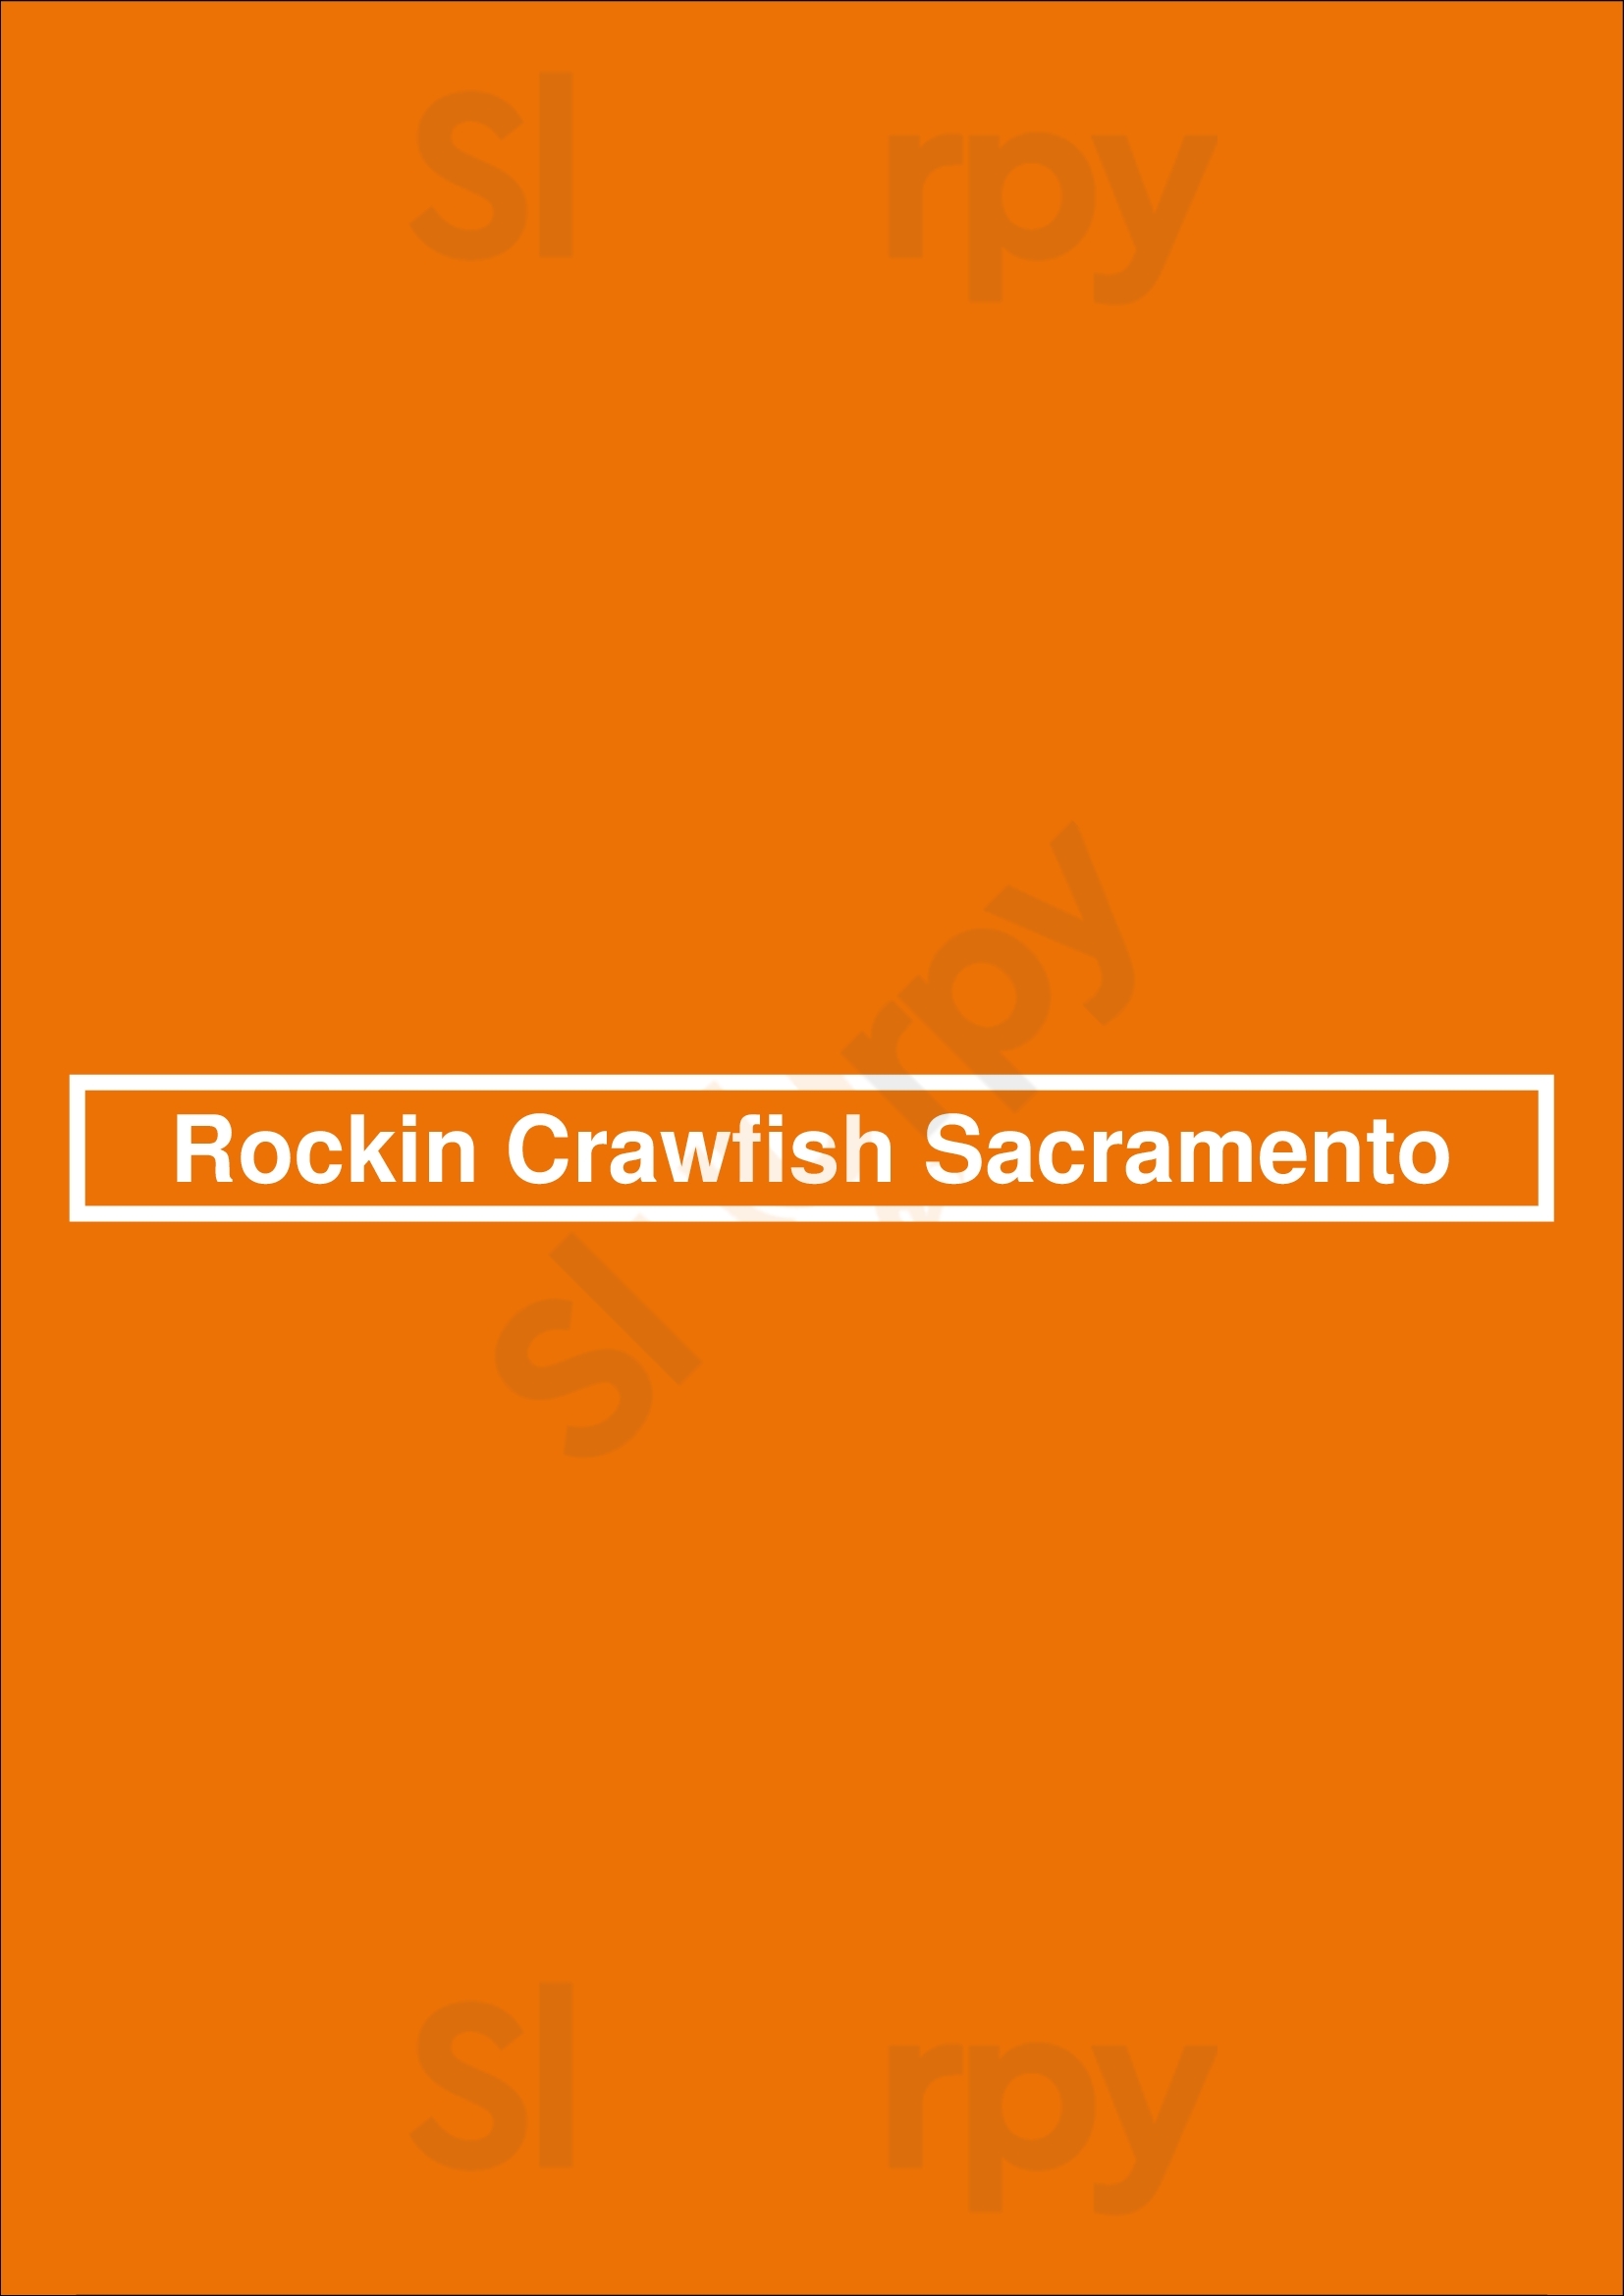 Rockin Crawfish Sacramento Sacramento Menu - 1